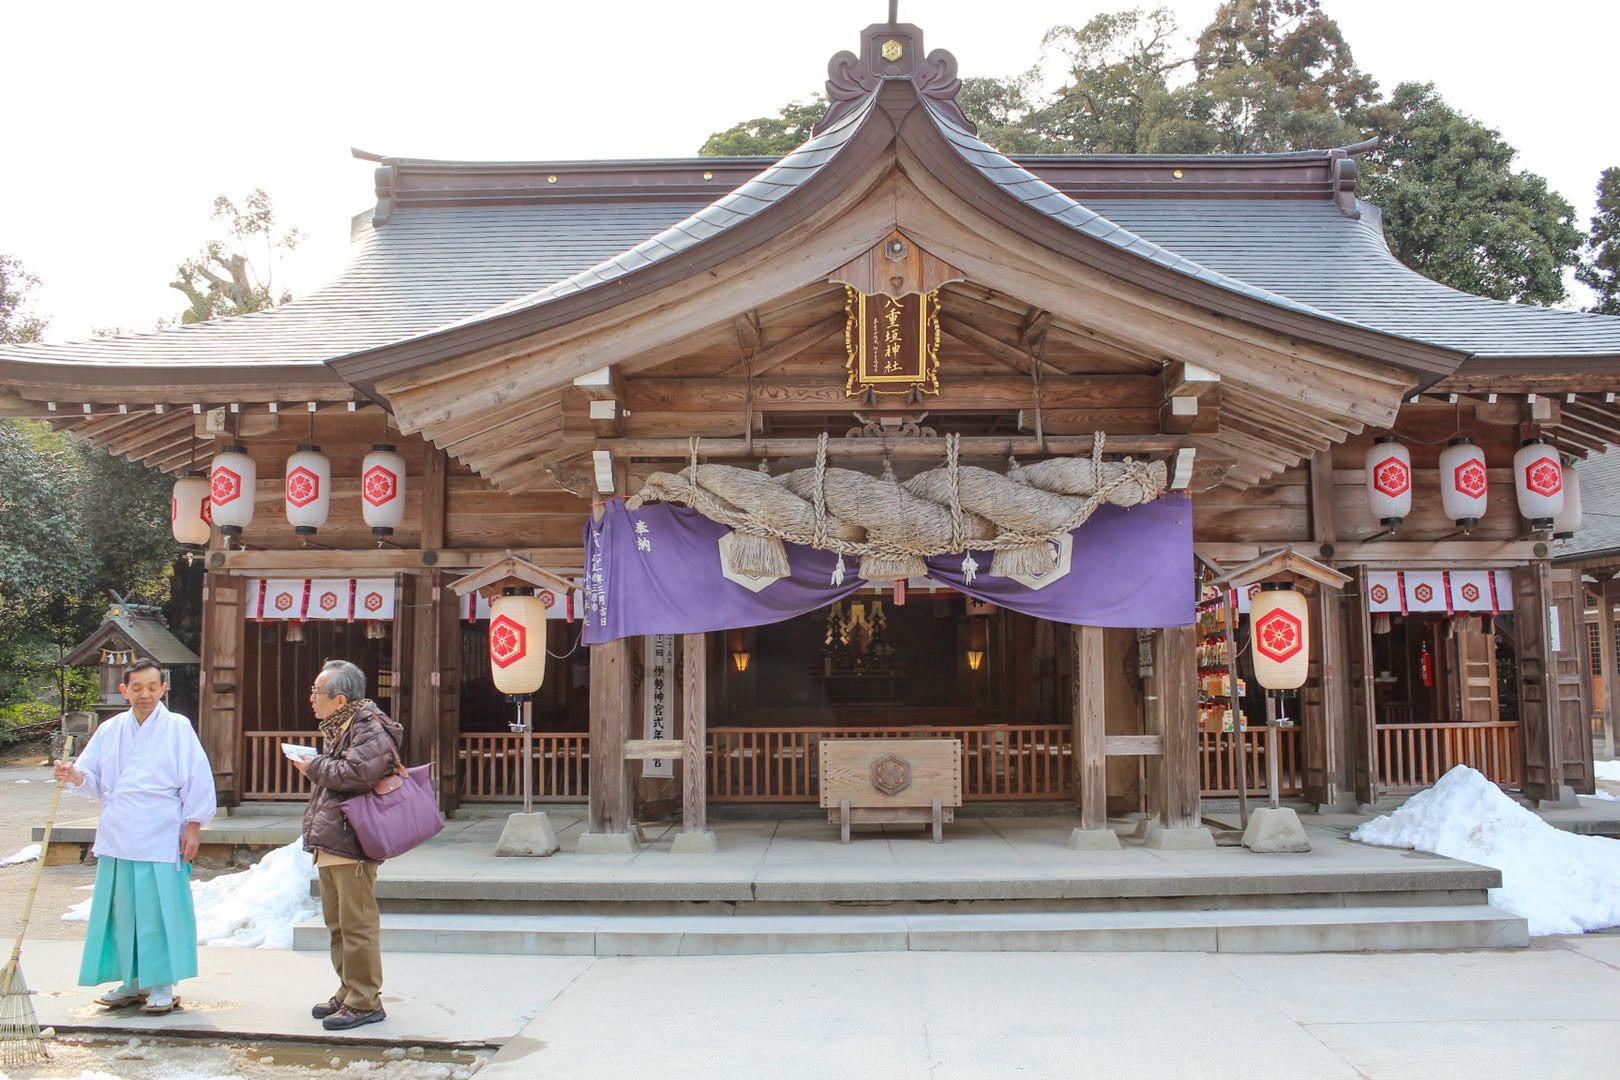 Yaegaki Shrine Tickets Deals Reviews Family Holidays - 